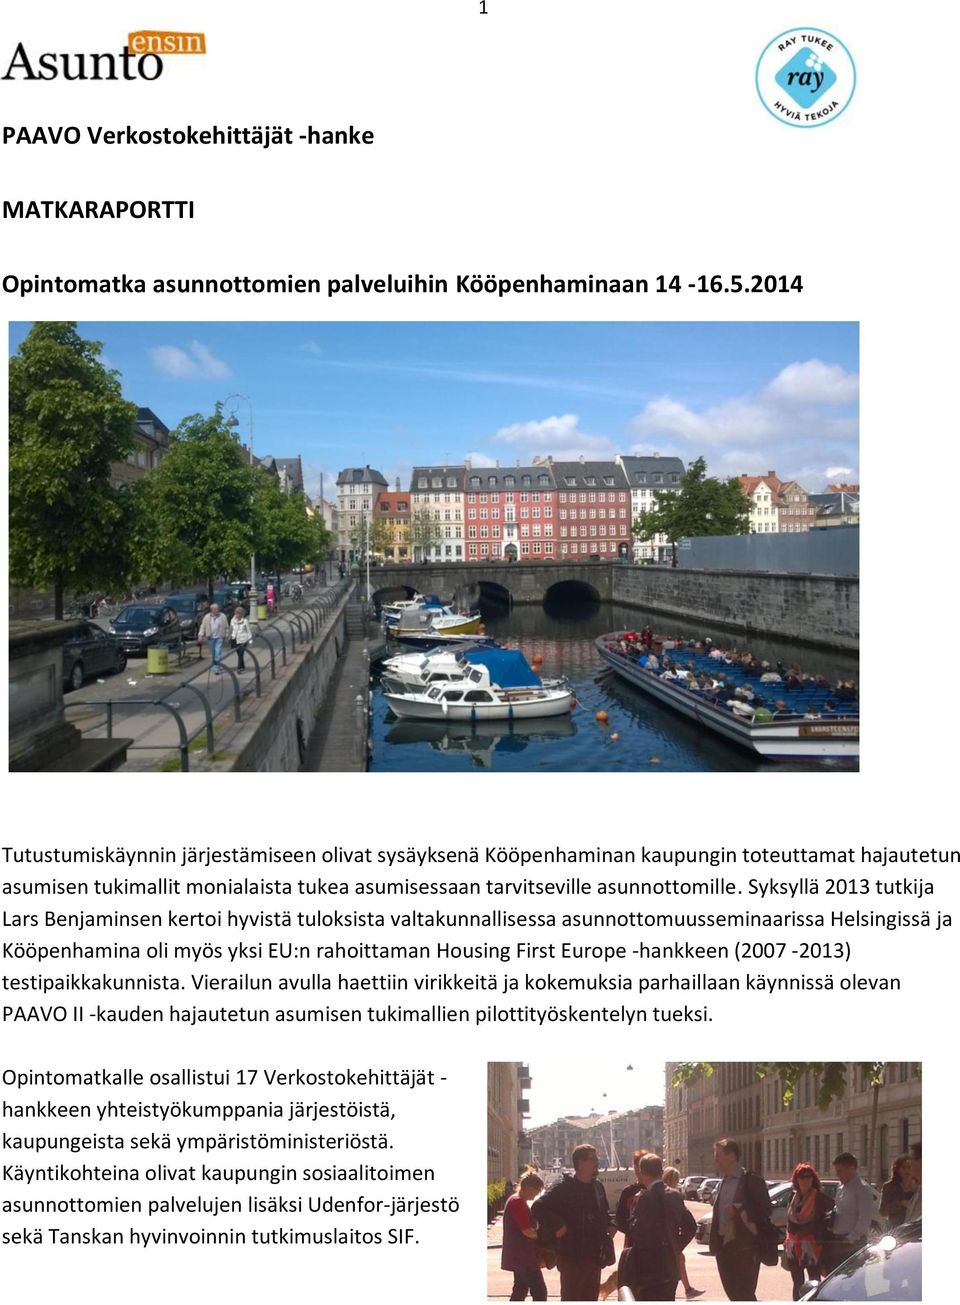 Syksyllä 2013 tutkija Lars Benjaminsen kertoi hyvistä tuloksista valtakunnallisessa asunnottomuusseminaarissa Helsingissä ja Kööpenhamina oli myös yksi EU:n rahoittaman Housing First Europe -hankkeen